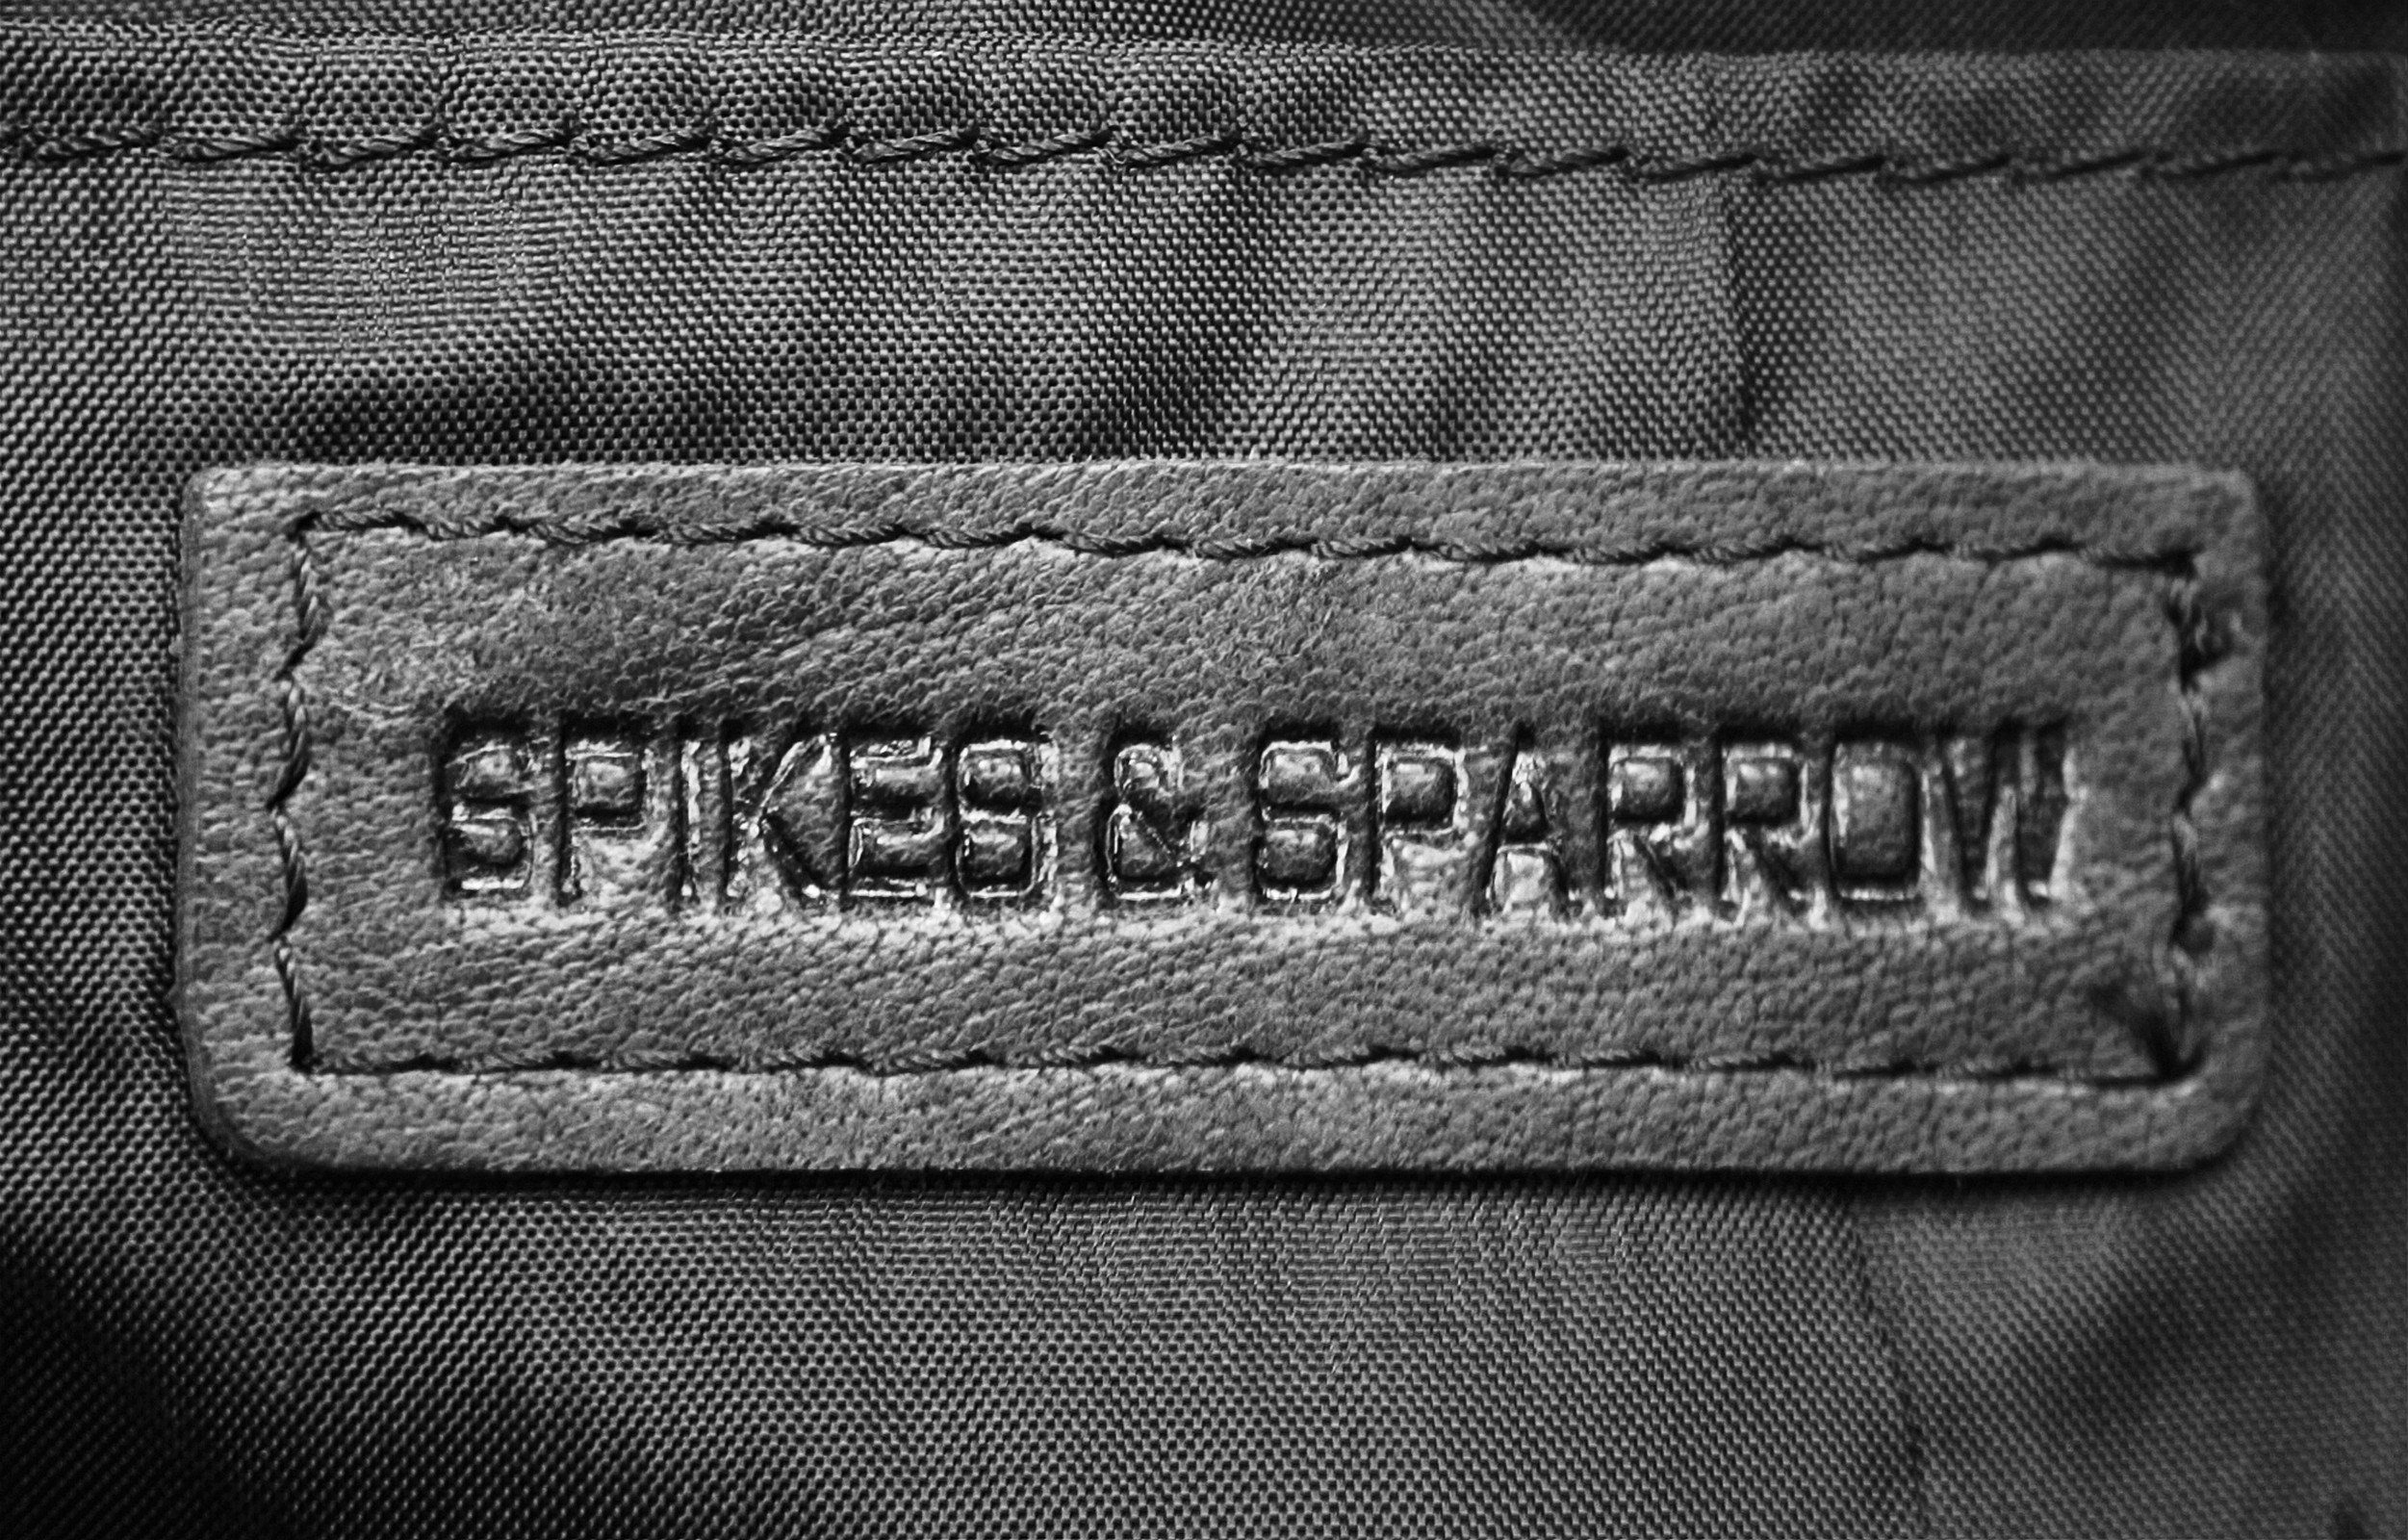 Spikes & Sparrow Handgelenktasche, schwarz Leder echt